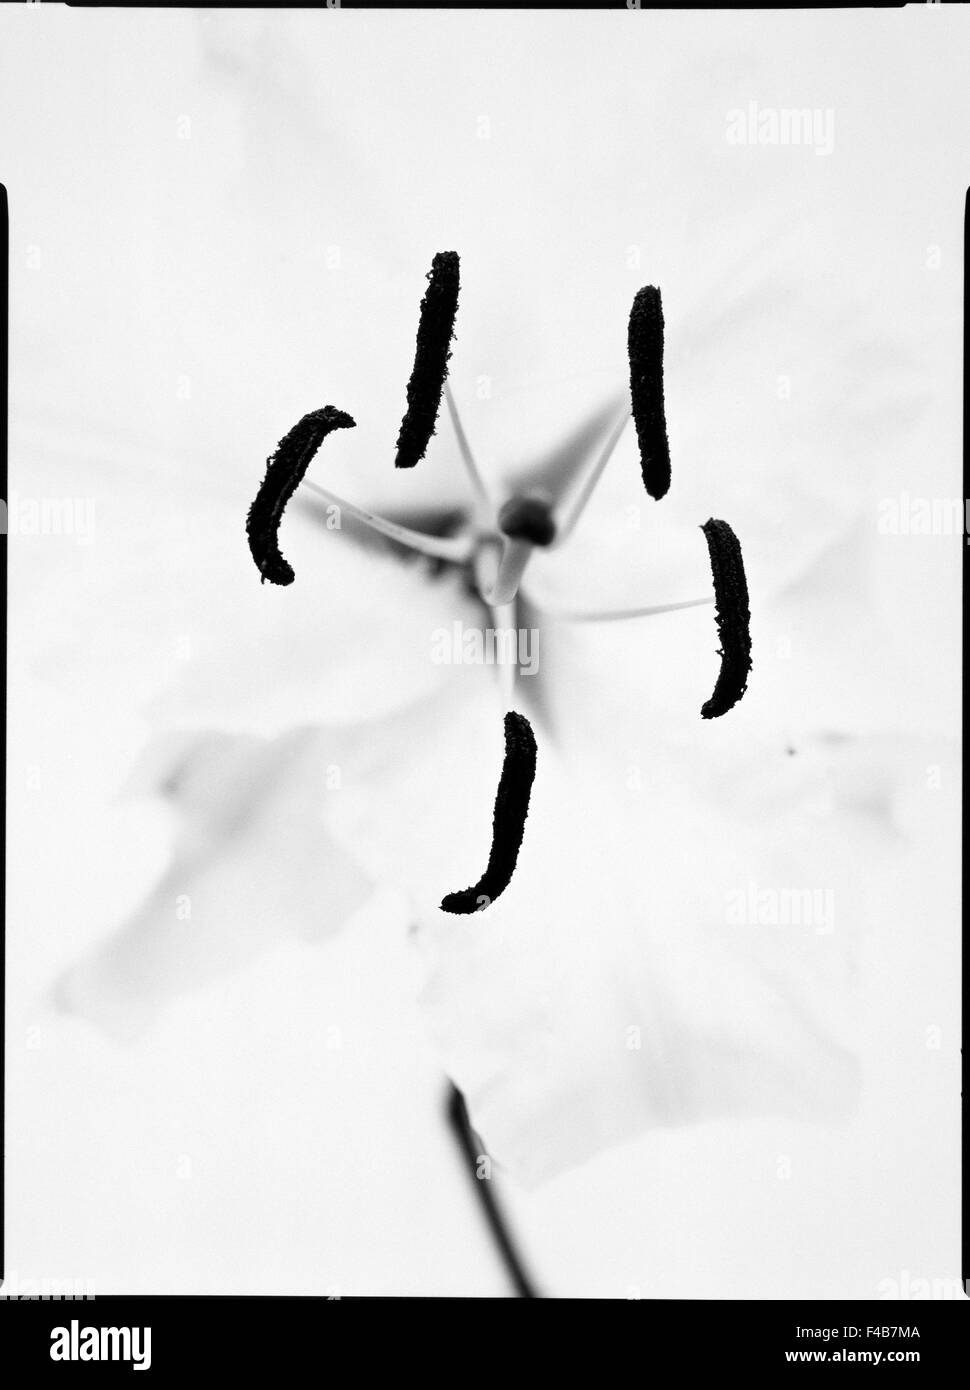 Abstract black noir et blanc catalogue 2 close-up contraste illusion imagination fleurs plantes inspiration simplicité Banque D'Images